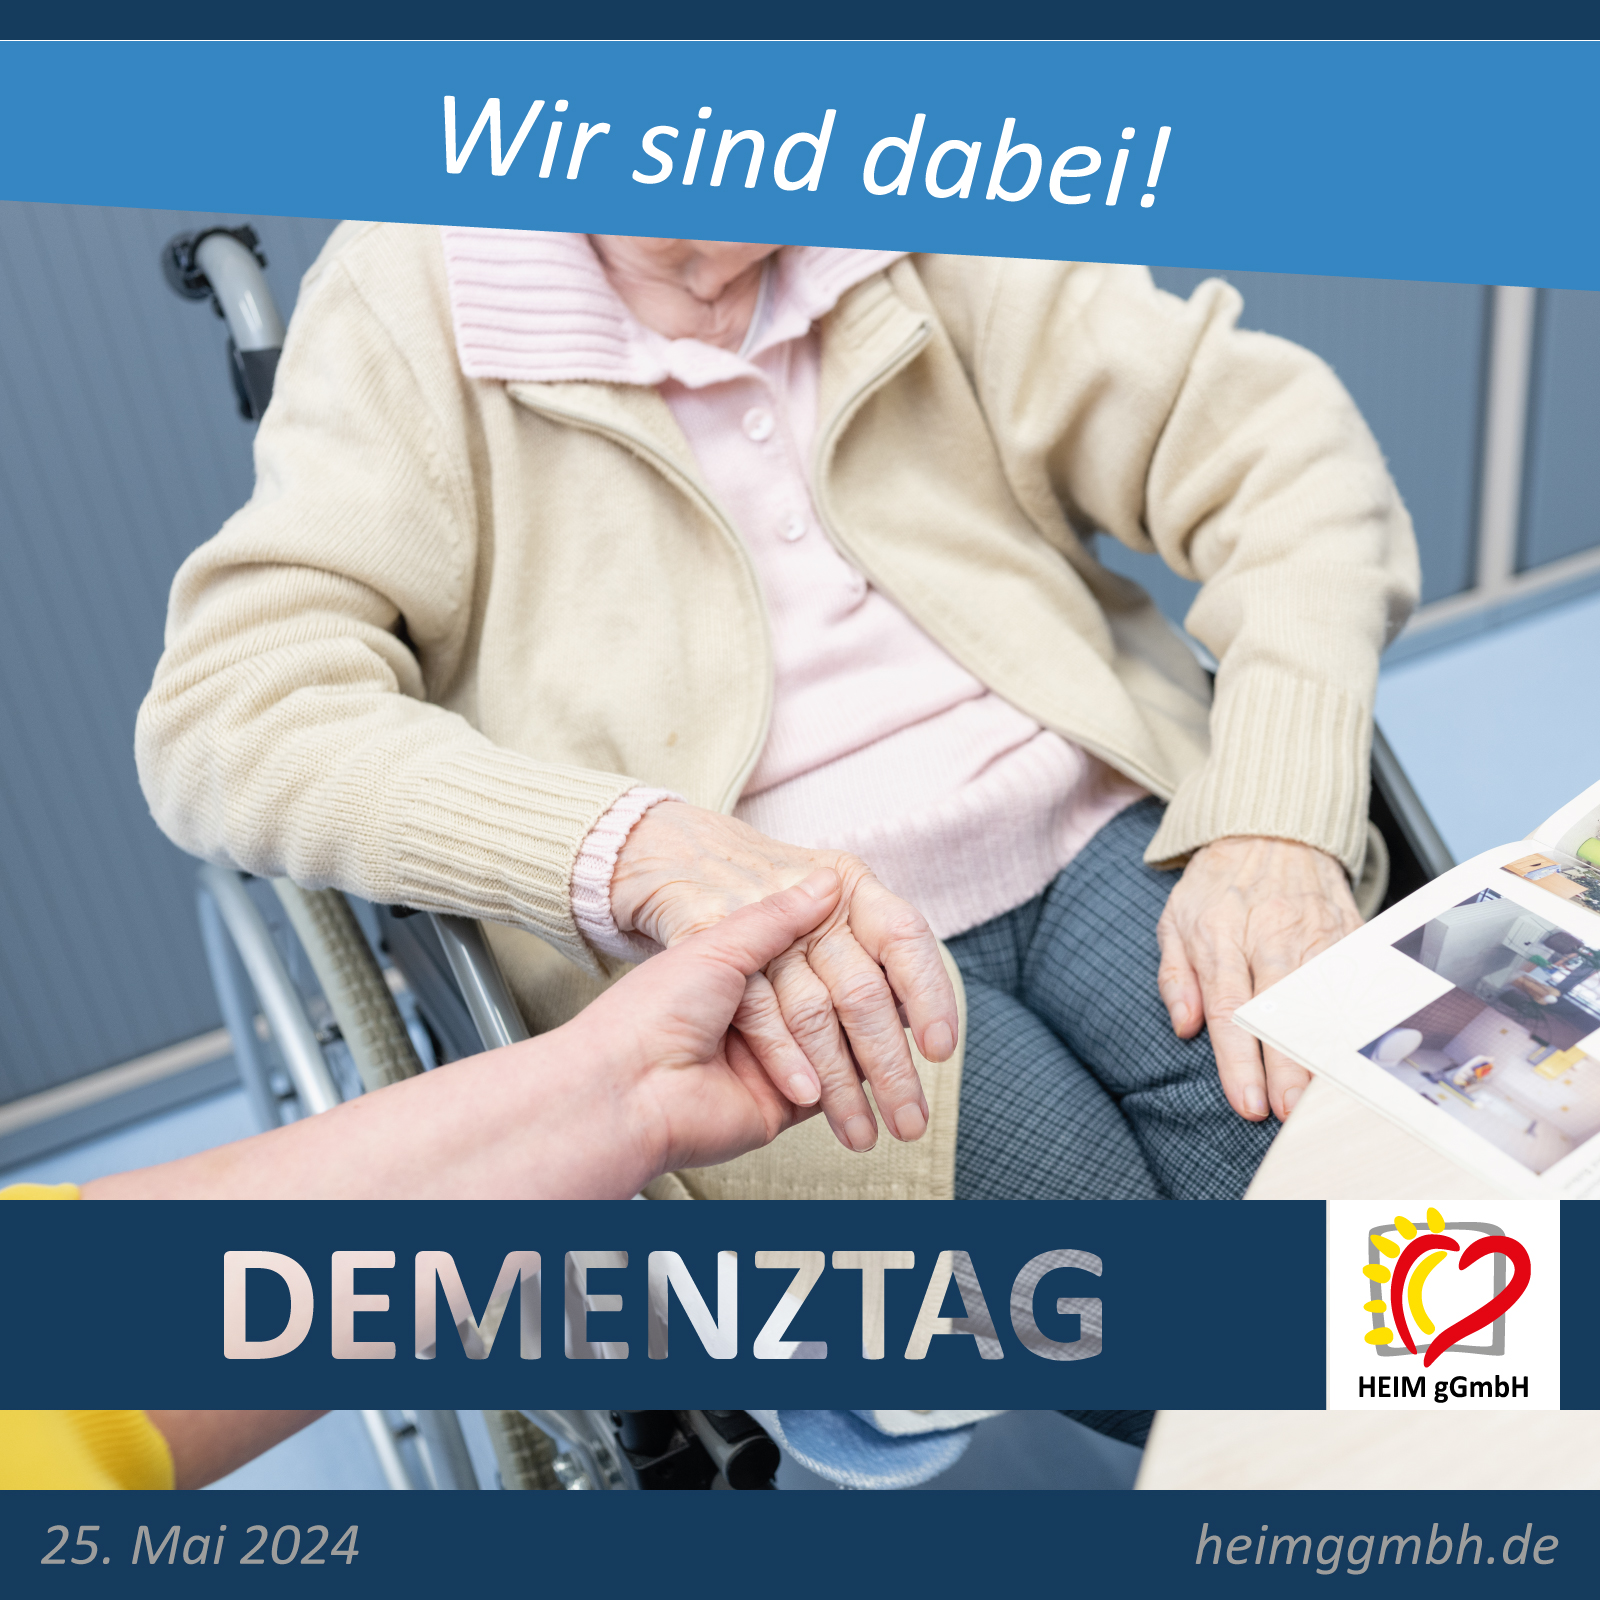 Rund um das Thema Demenz geht es am 25. Mai 2024 auf der Dresdener Straße in Chemnitz. Die HEIM gGmbH ist mit dabei vertreten.